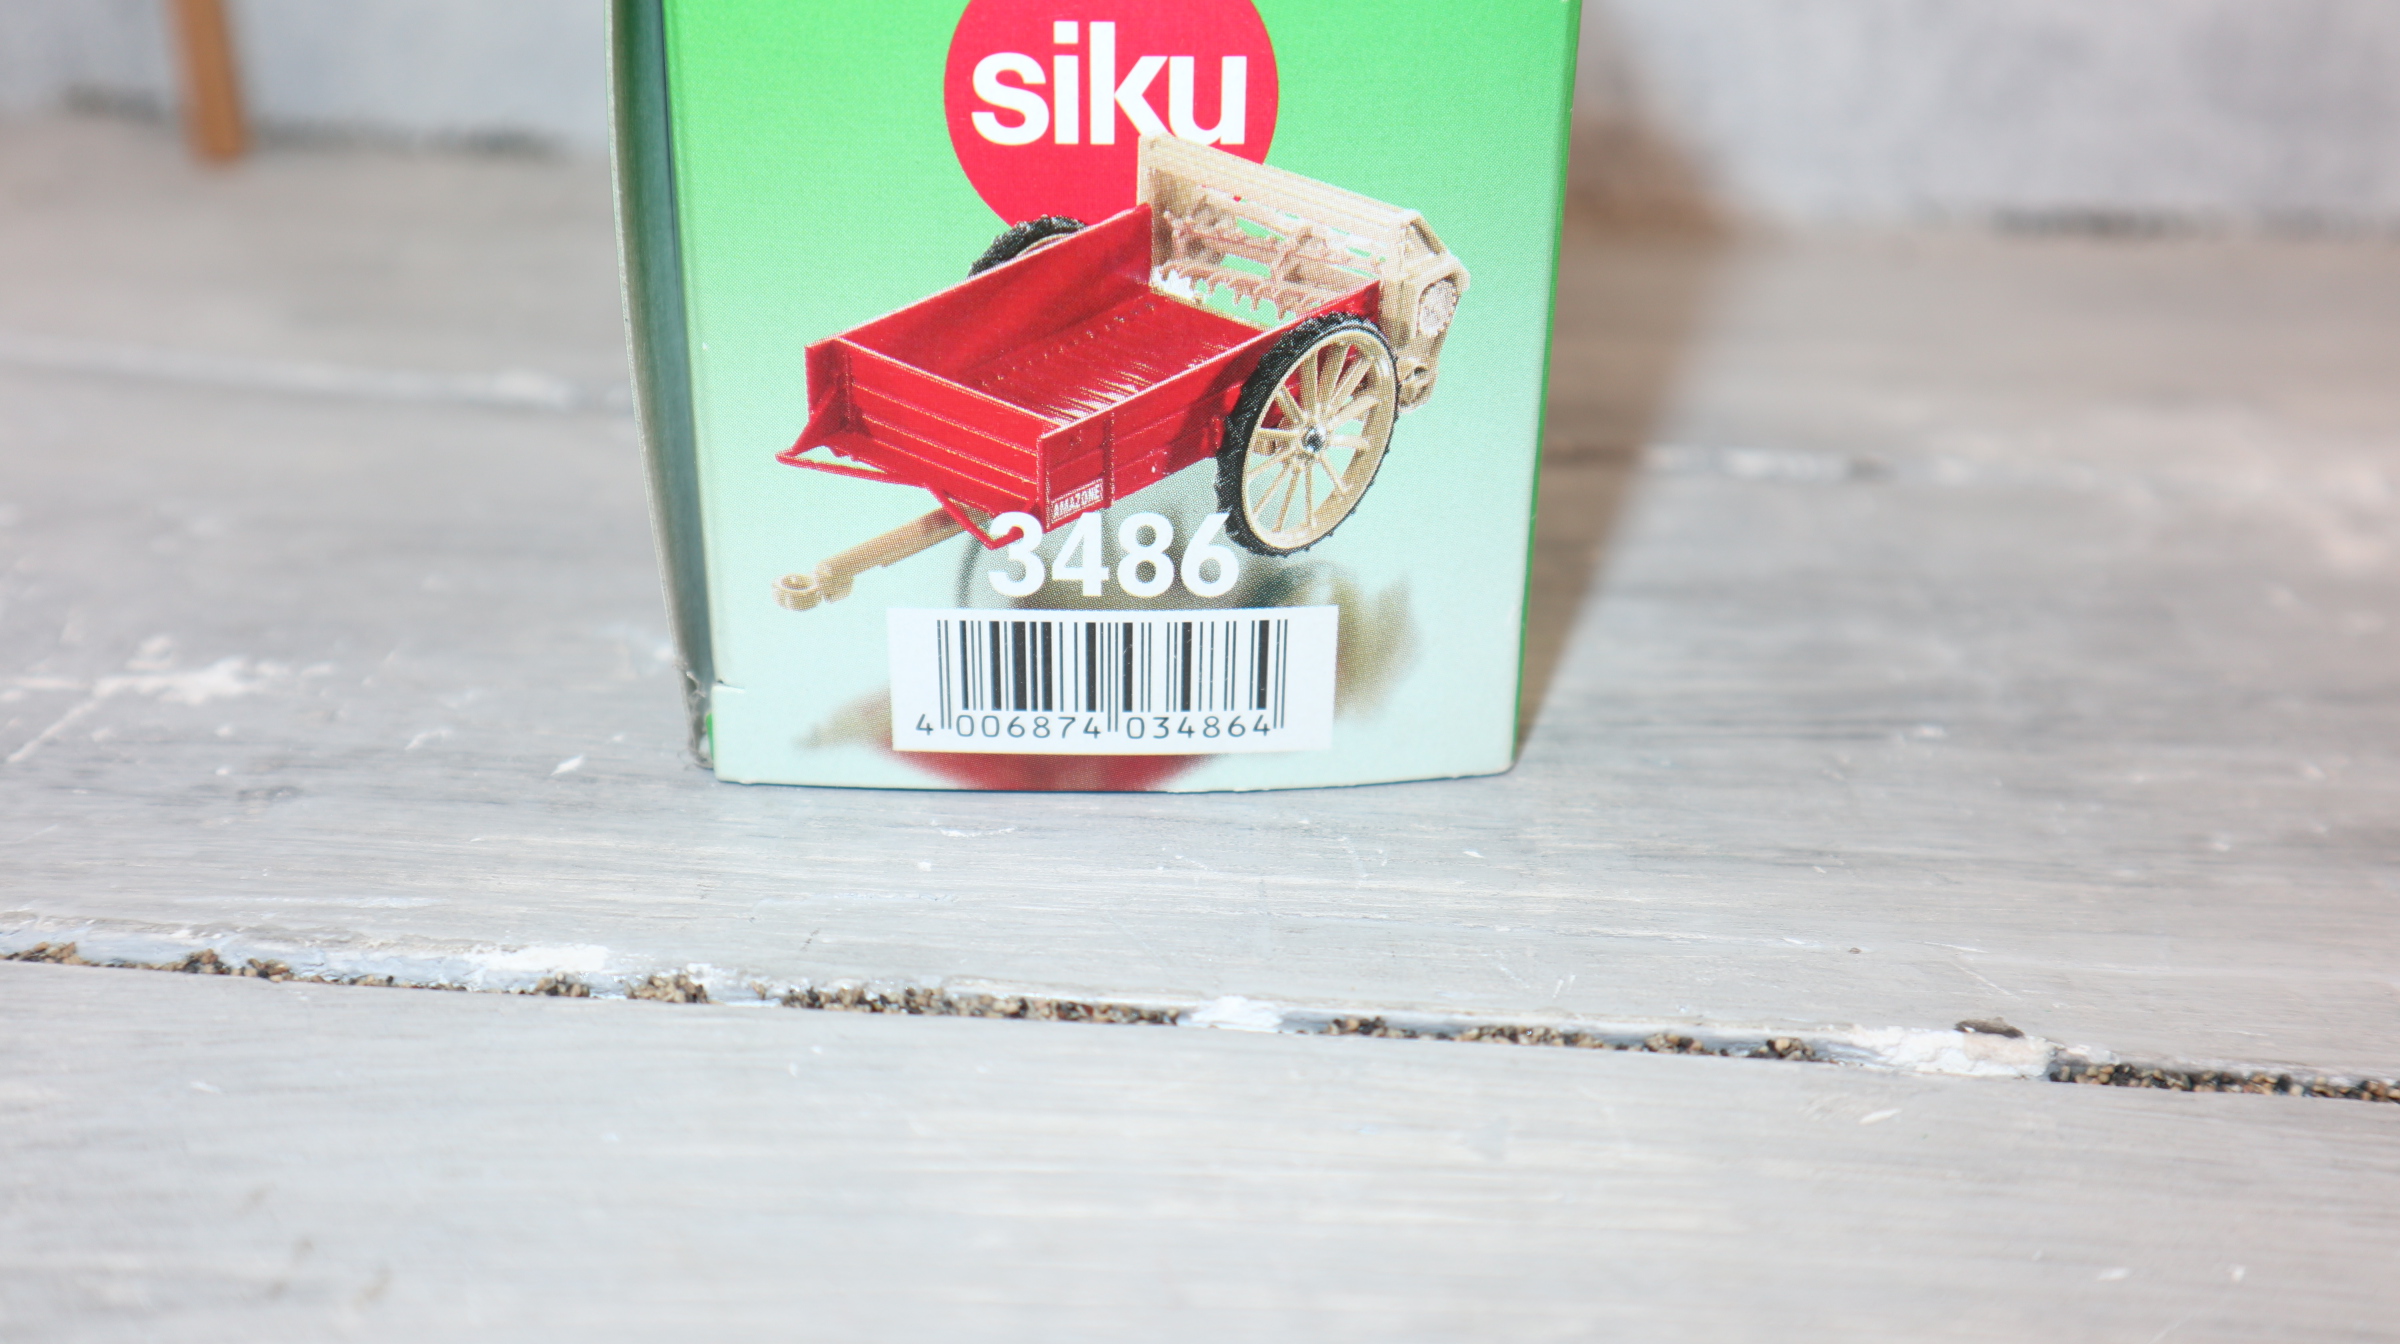 Siku 3486 in 1:32 Classic, AMAZONE Dungstreuer in rot-beige, NEU in OVP